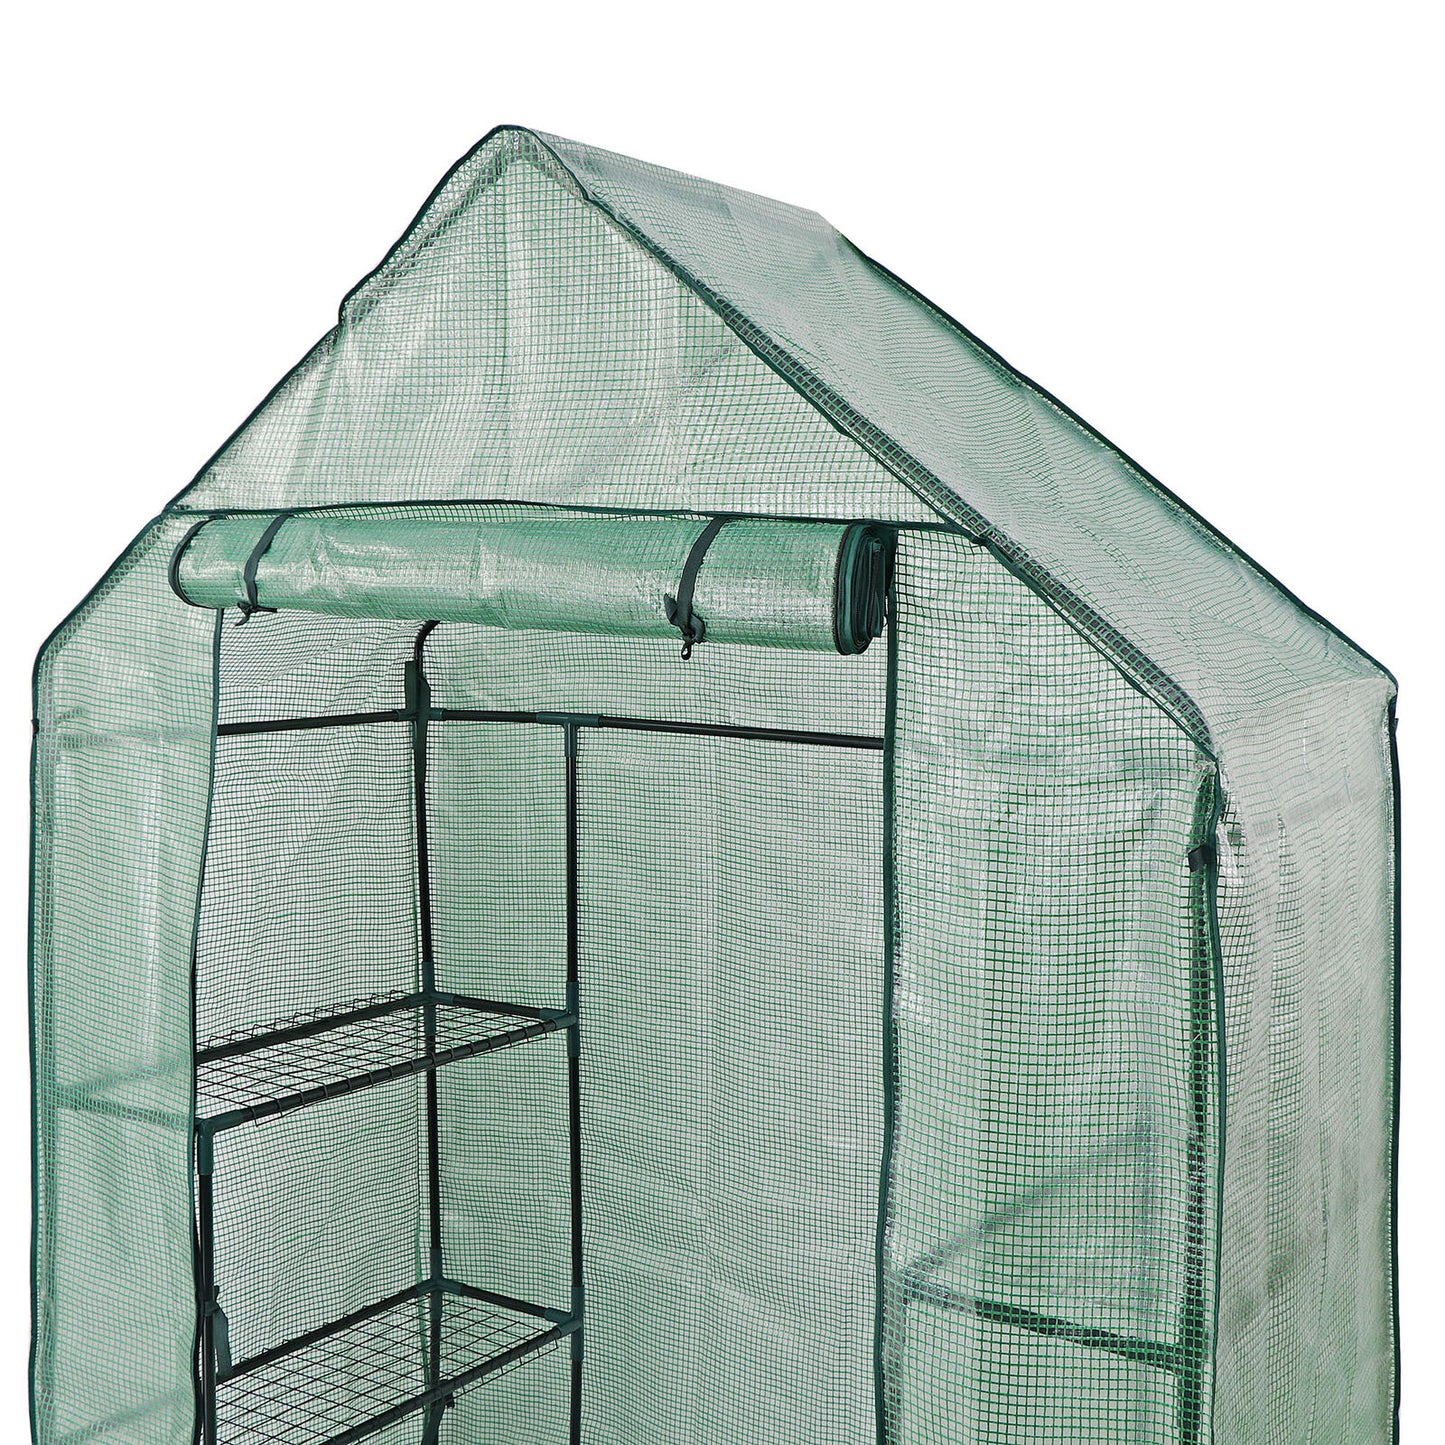 Pro 6 Shelves 3 Tier Greenhouse Walk In Door Outdoor Green House for Planter